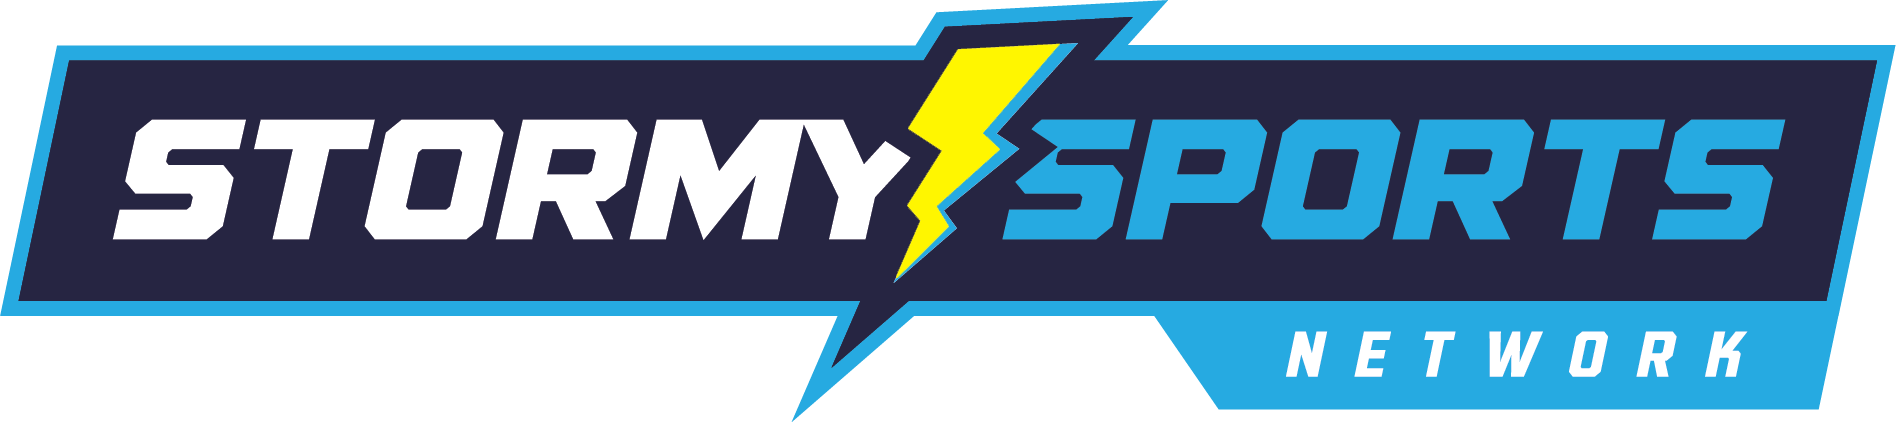 Stormy Sports Net